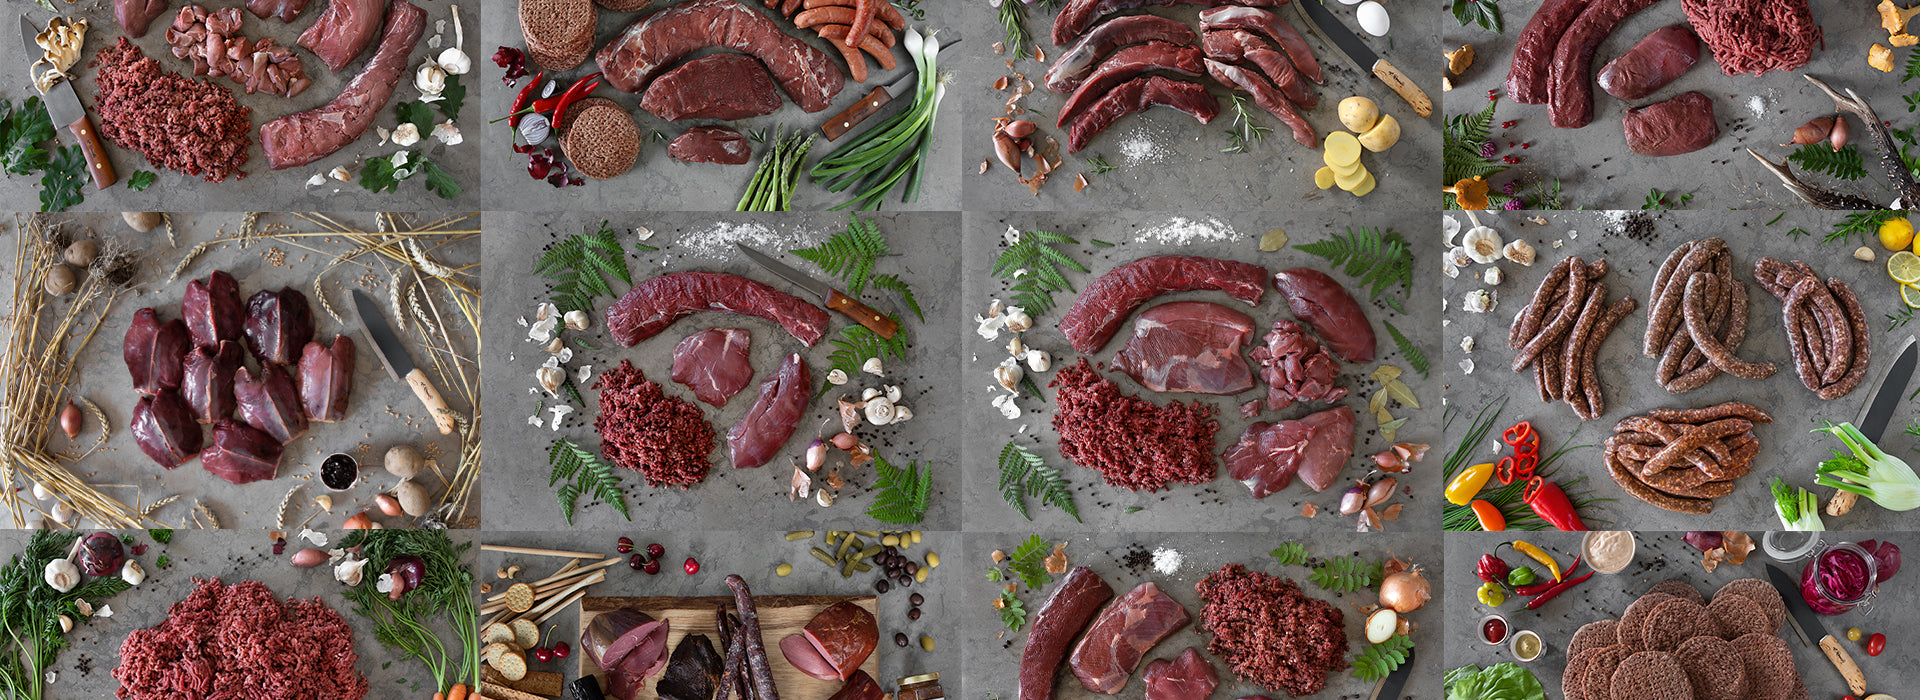 12 viltlådor med viltkött du kan köpa hos Gläntans